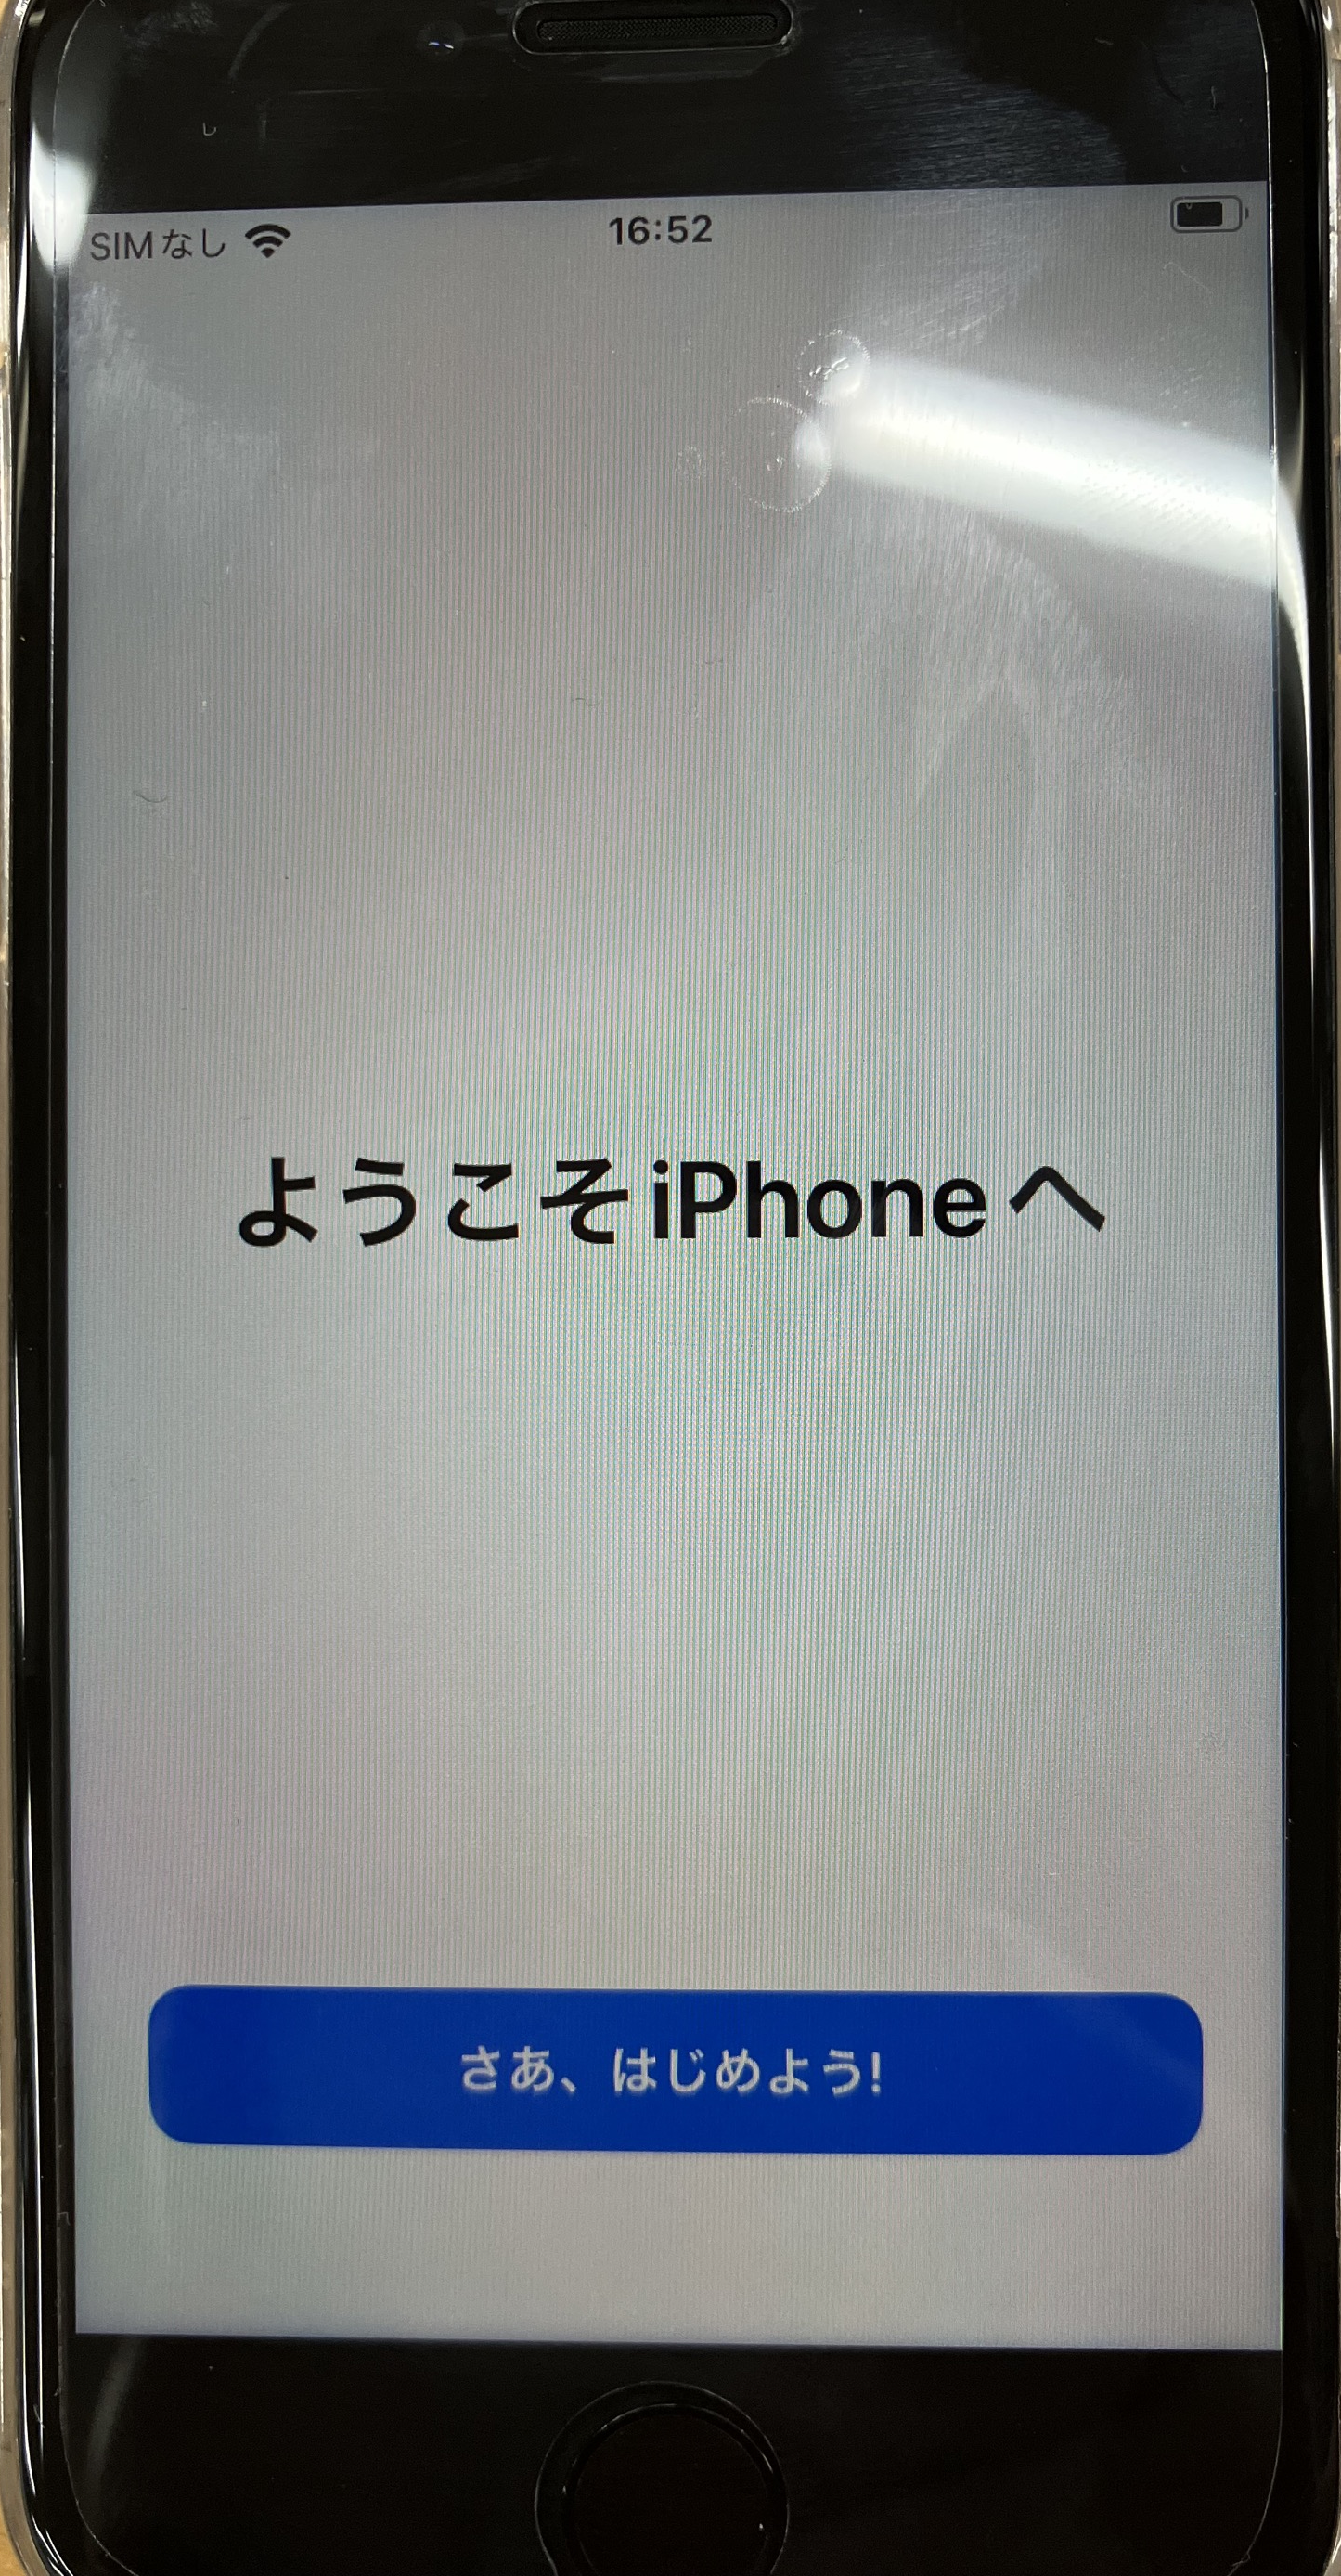 iPhone:その他の設定を行い、「ようこそiPhoneへ」が表示されたら「さあ、はじめよう」をタップ